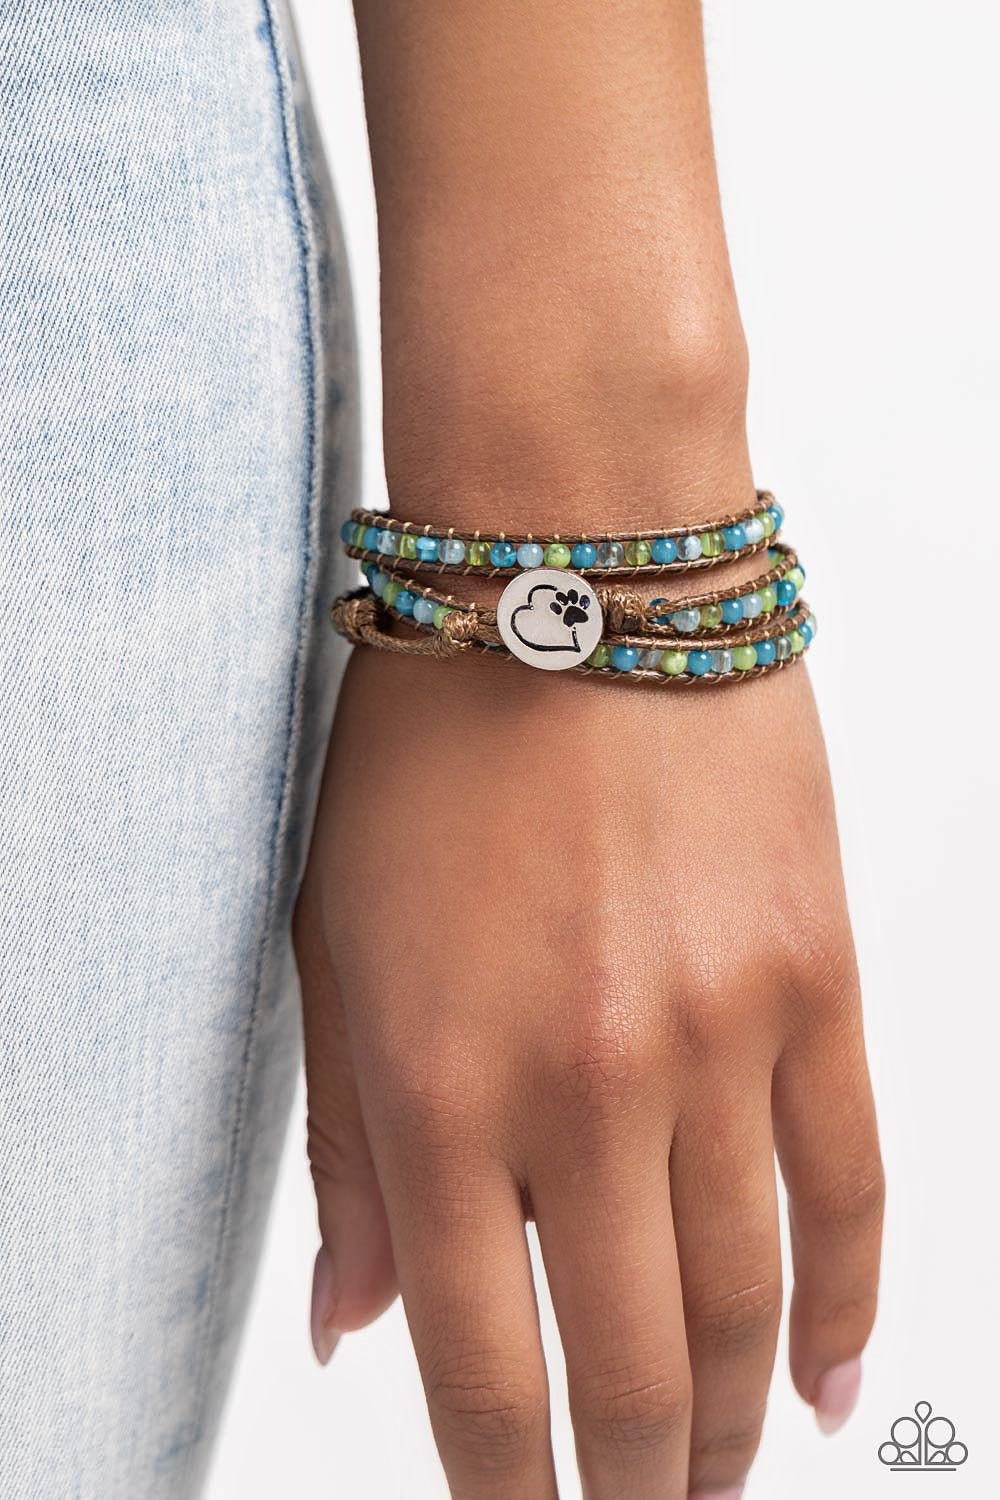 PAW-sitive Thinking - Blue bracelet